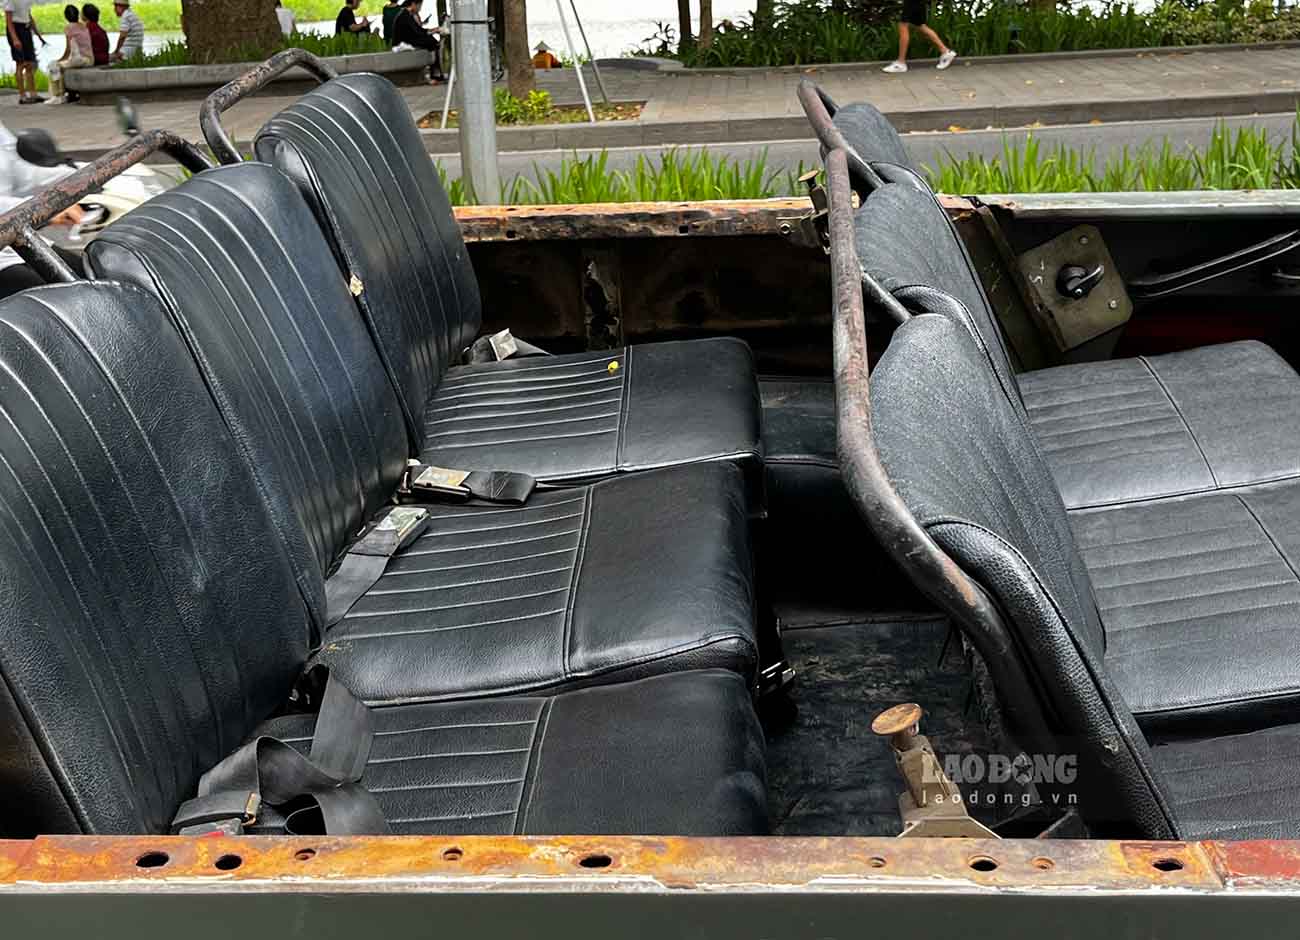 Phần ghế trên xe đã rất cũ, rách nhiều vị trí.